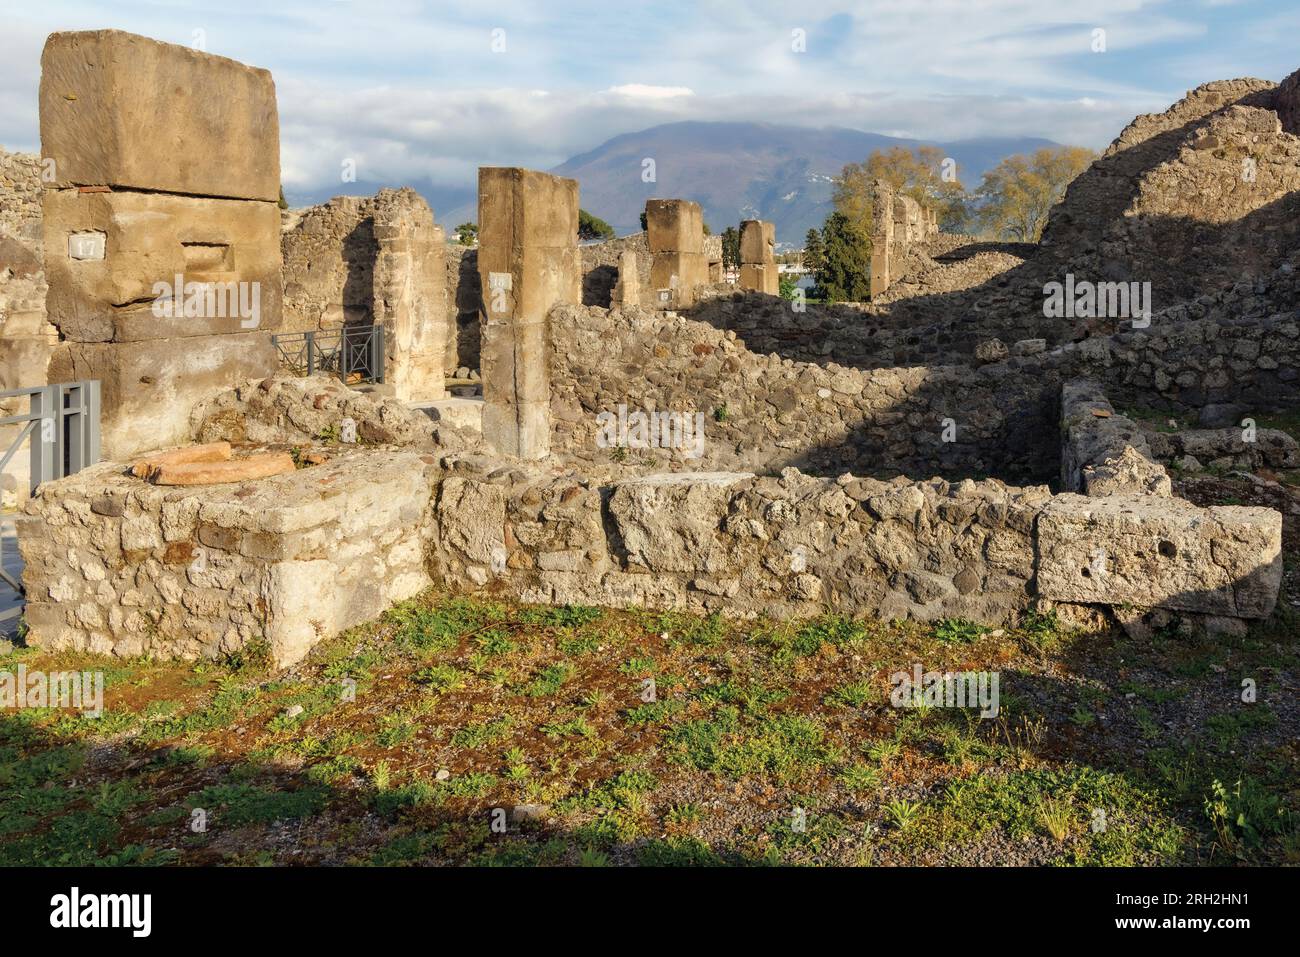 Ausgrabungsstätte Pompeji, Kampanien, Italien. Ausgehobene Eigenschaften. Pompeji, Herculaneum und Torre Annunziata werden gemeinsam zum UNESCO-Weltkulturerbe erklärt Stockfoto